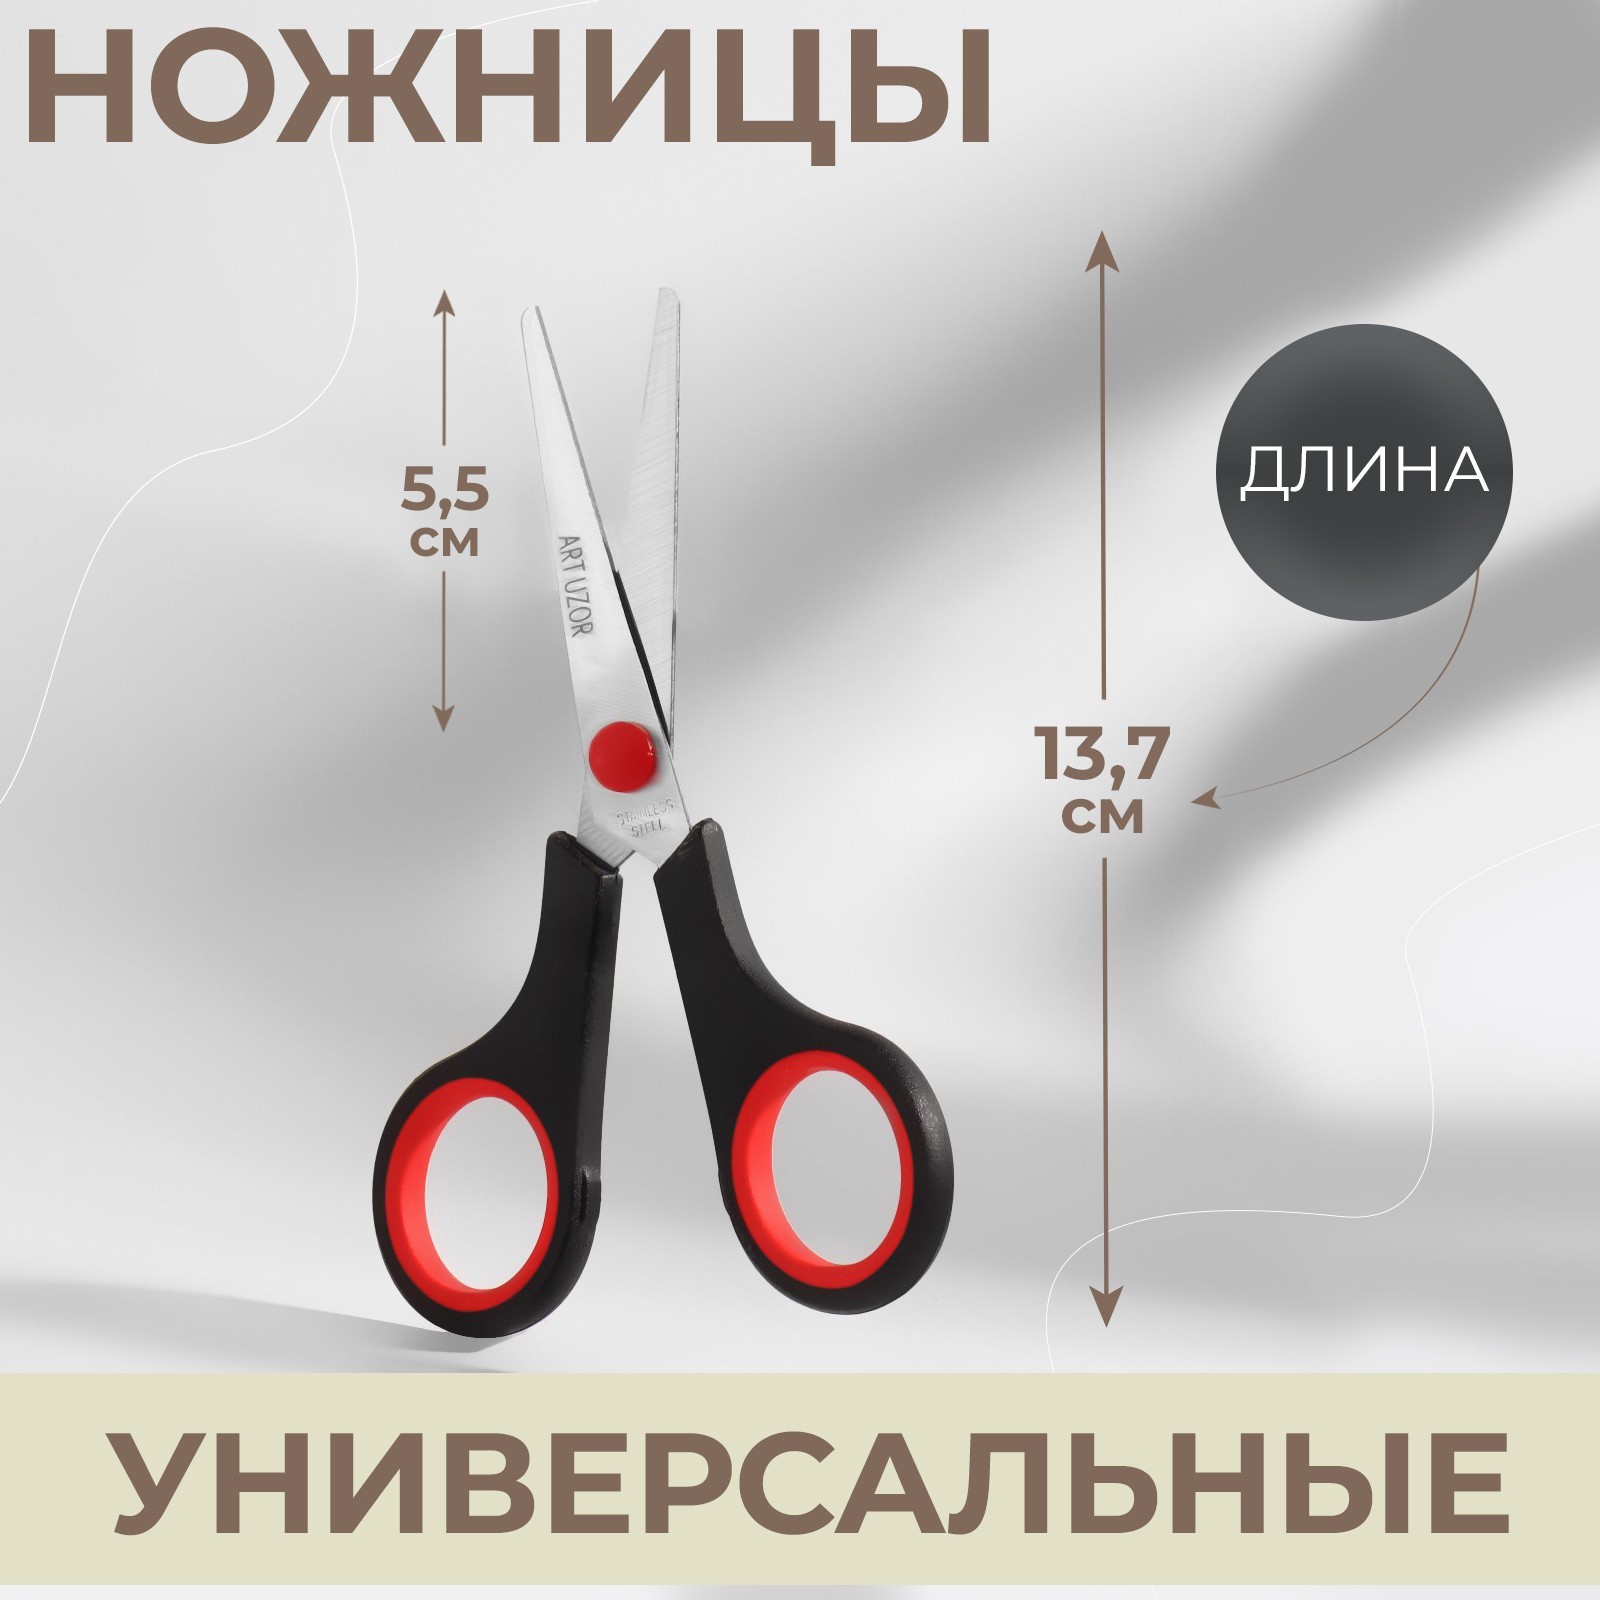  универсальные, 14 см (431889) - Купить по цене от 34.80 руб .